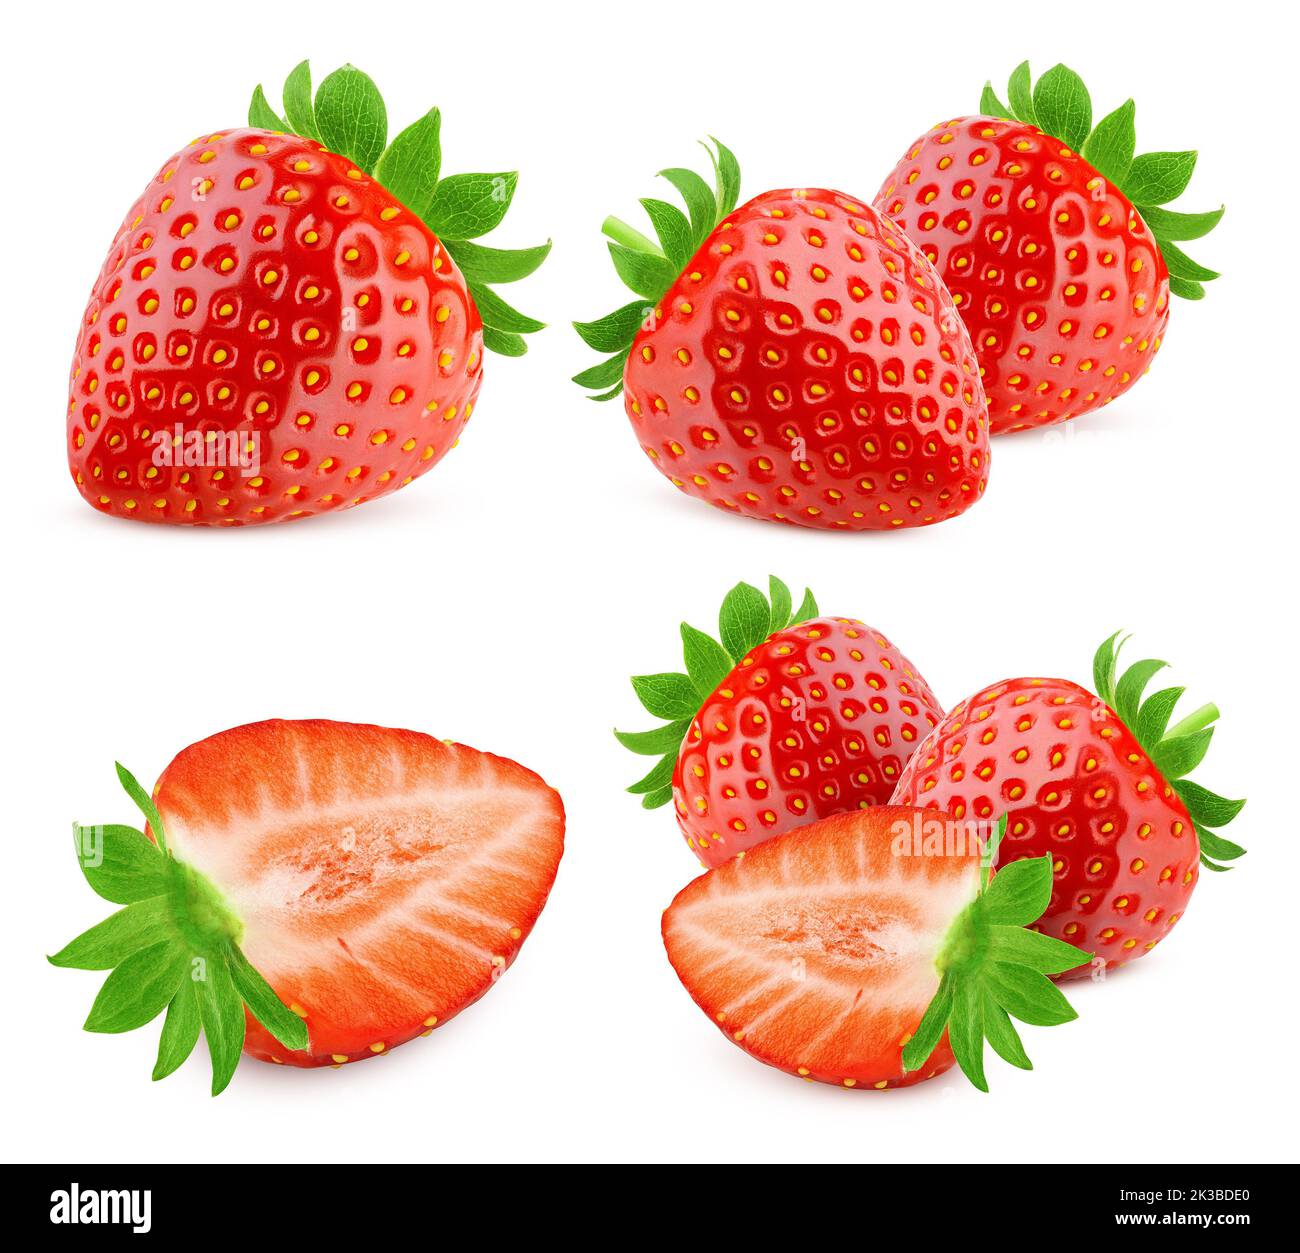 Erdbeere isoliert auf weißem Hintergrund, Schnittpfad, volle Schärfentiefe Stockfoto